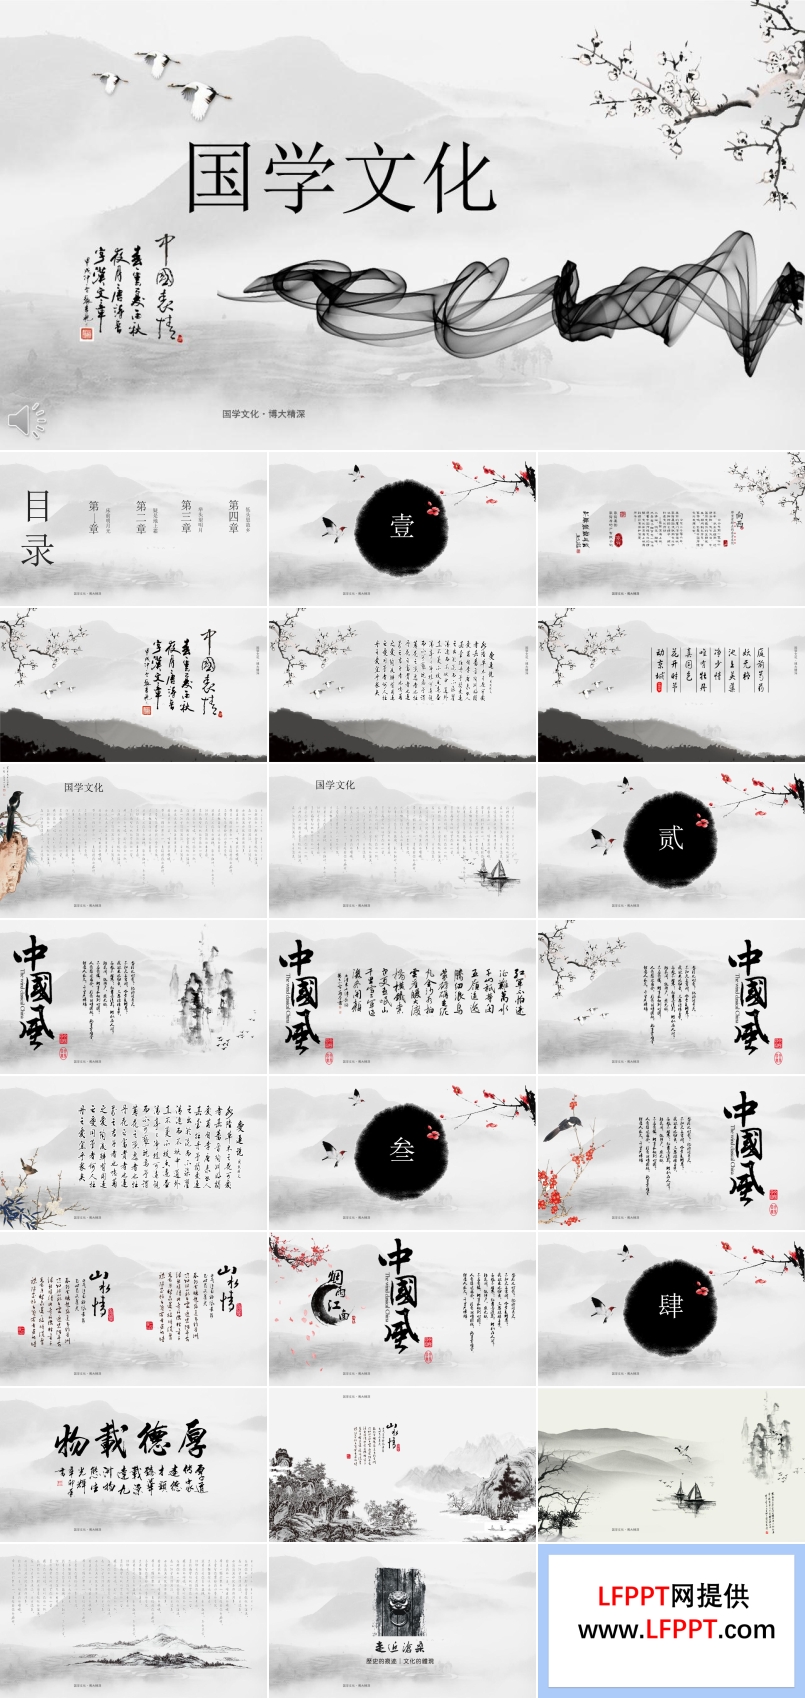 中国水墨风格经典国学文化PPT模板